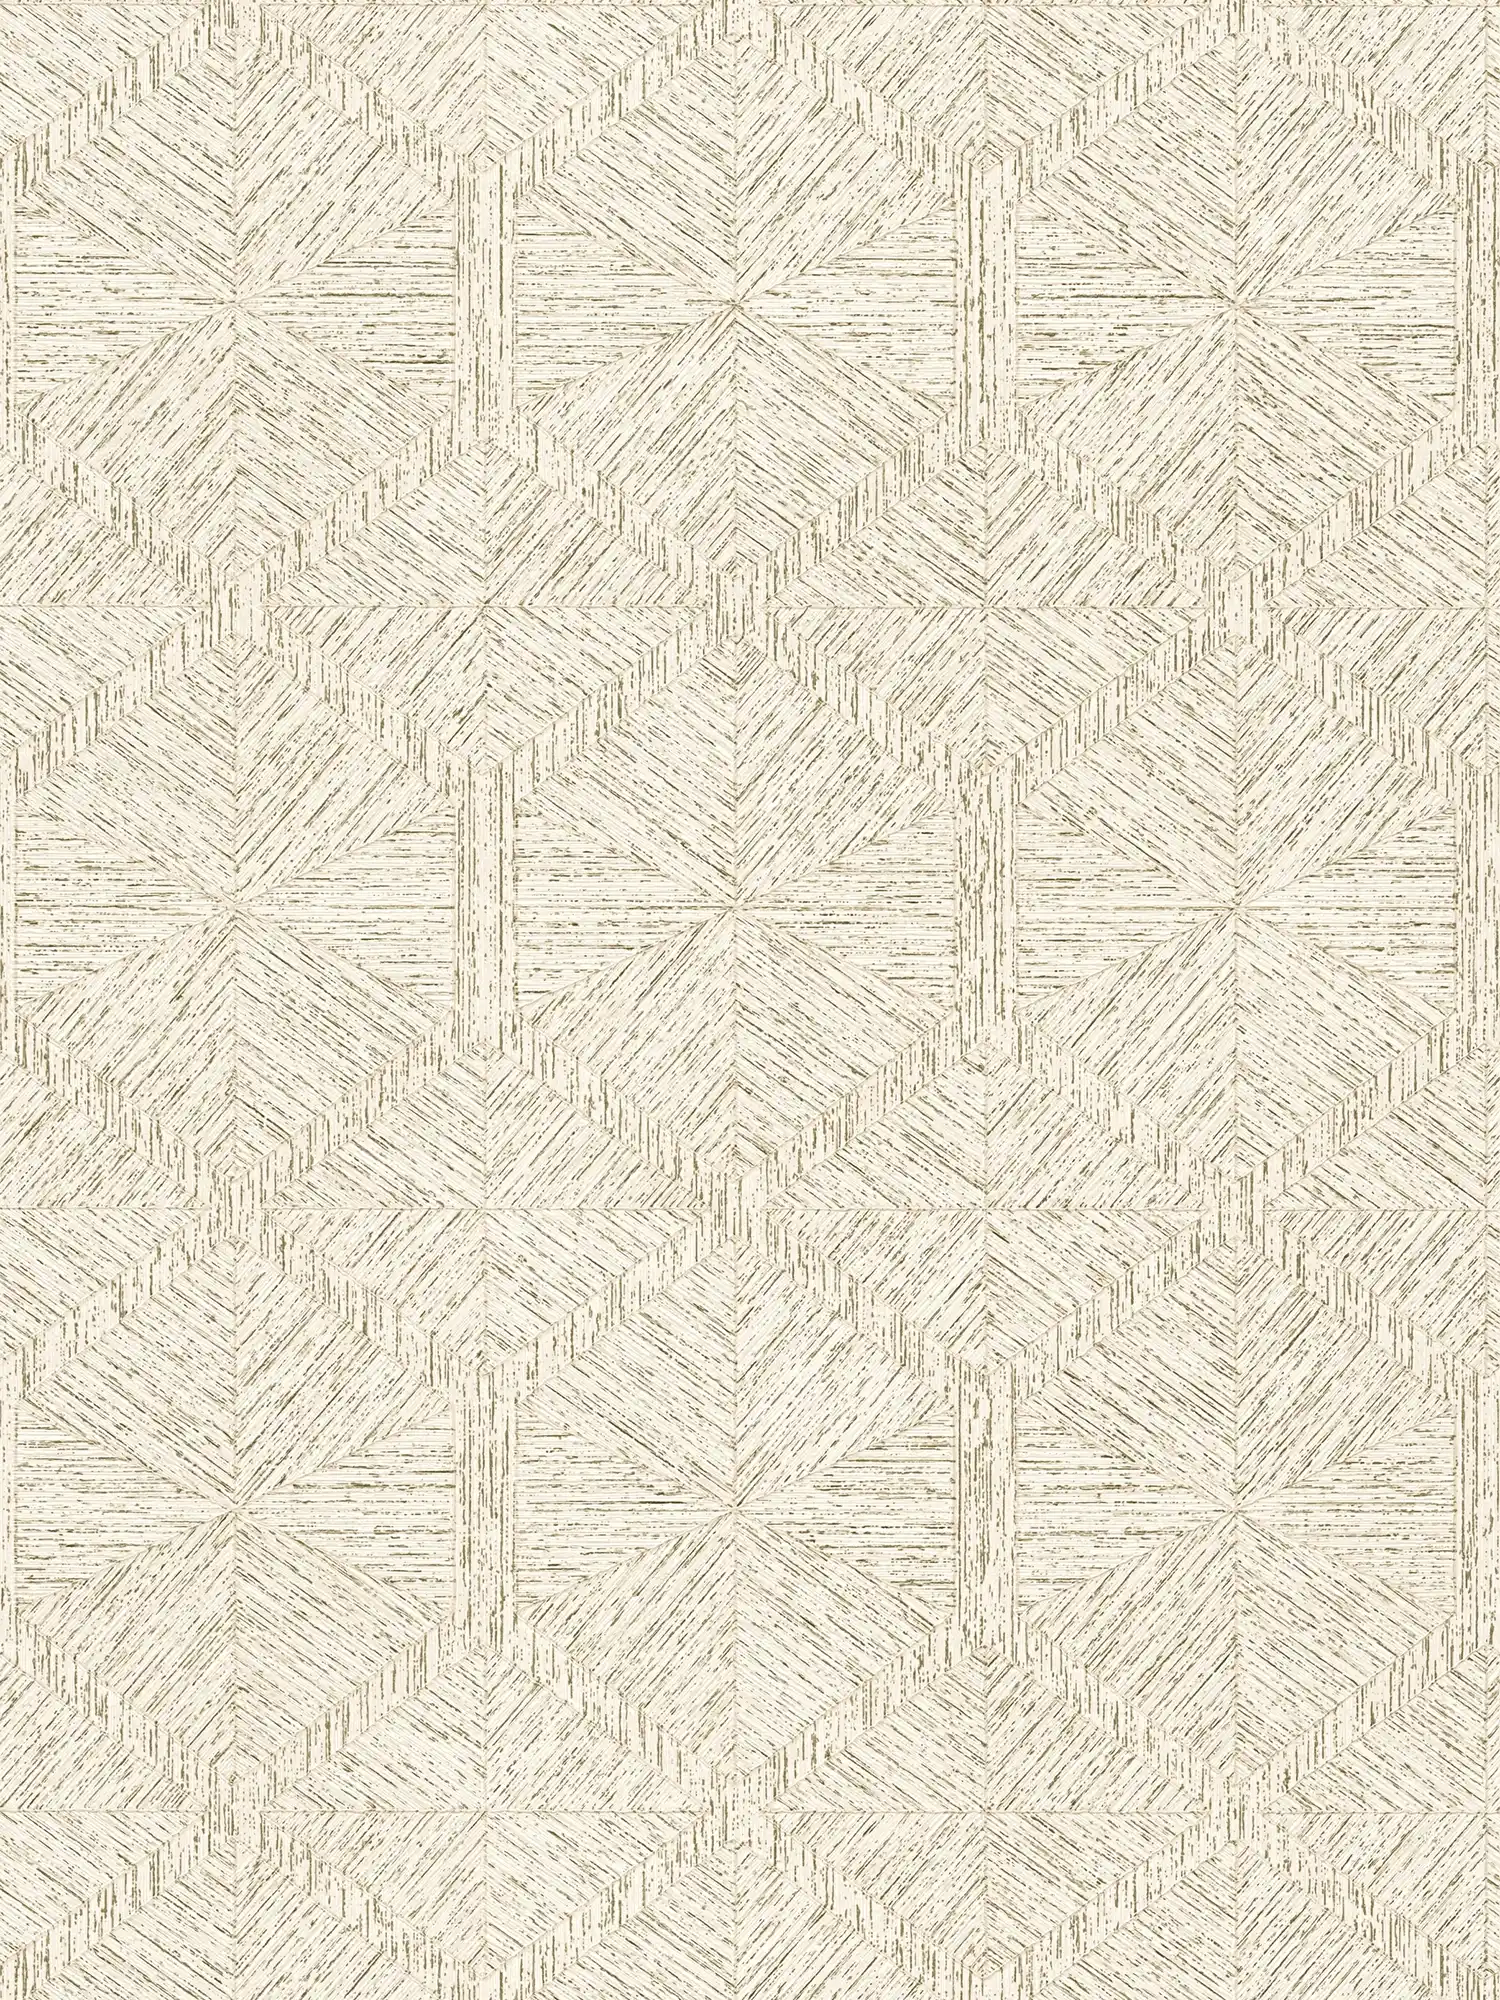 Graphic pattern wallpaper with wood look design - beige, metallic
